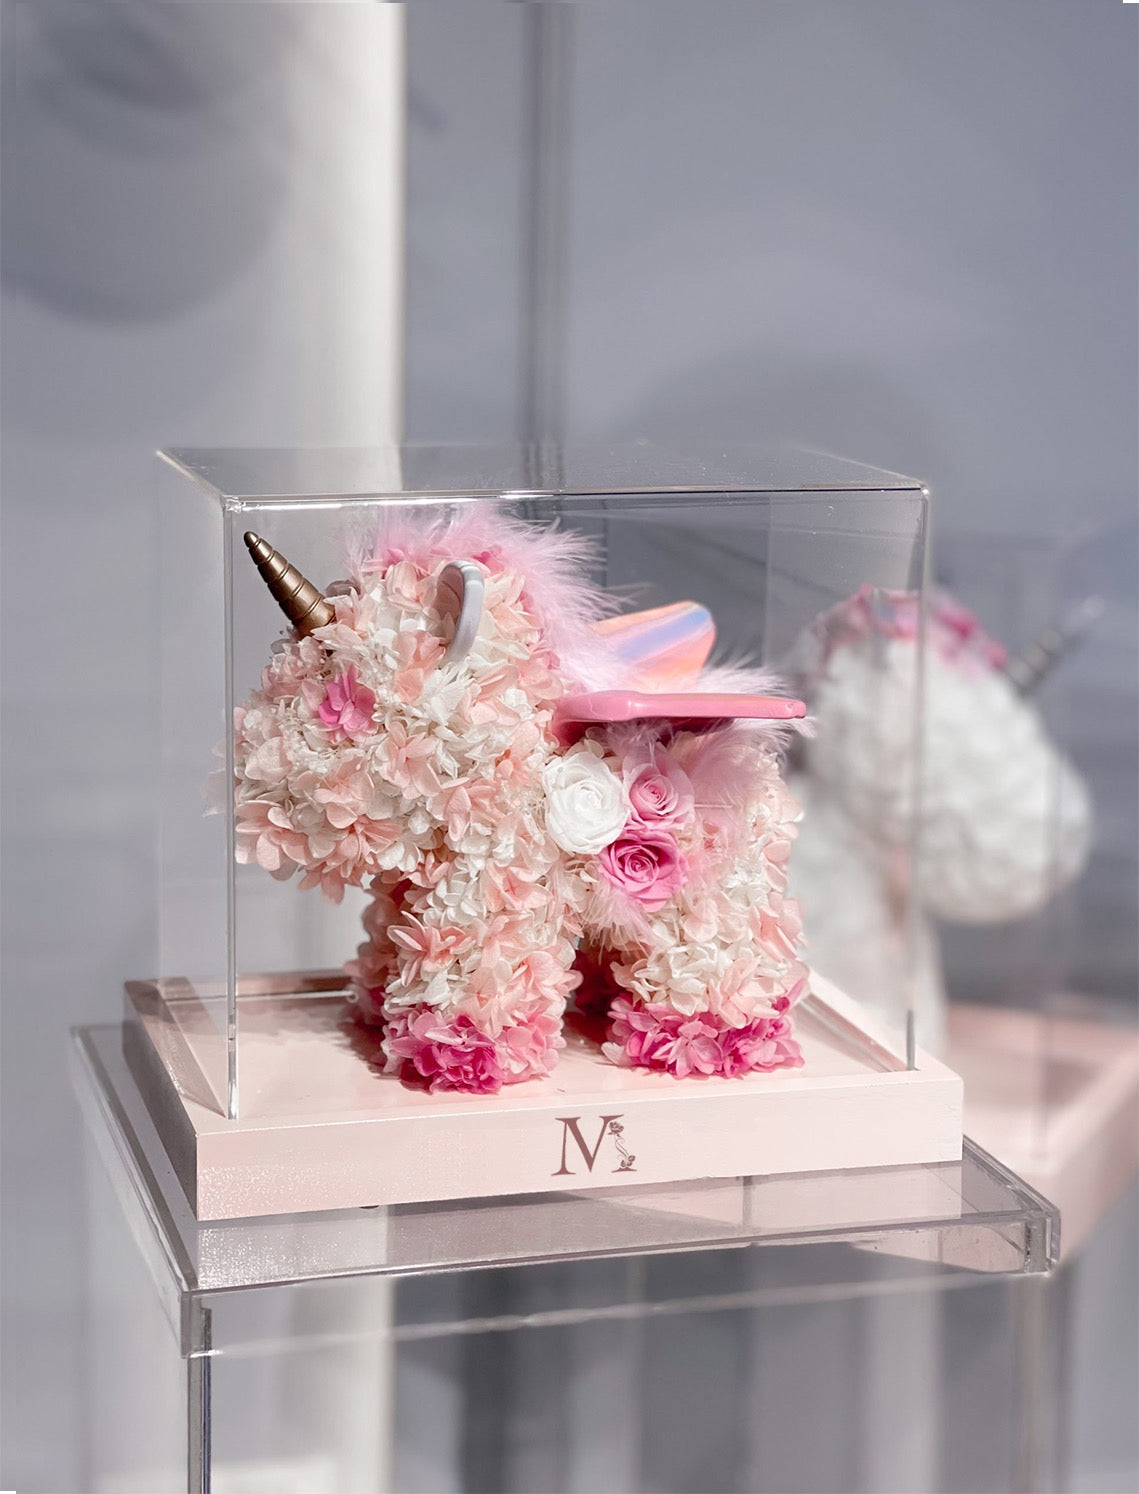 Lovely Unicorn Preserved Flower 可愛繡球玫瑰獨角獸永生花盒